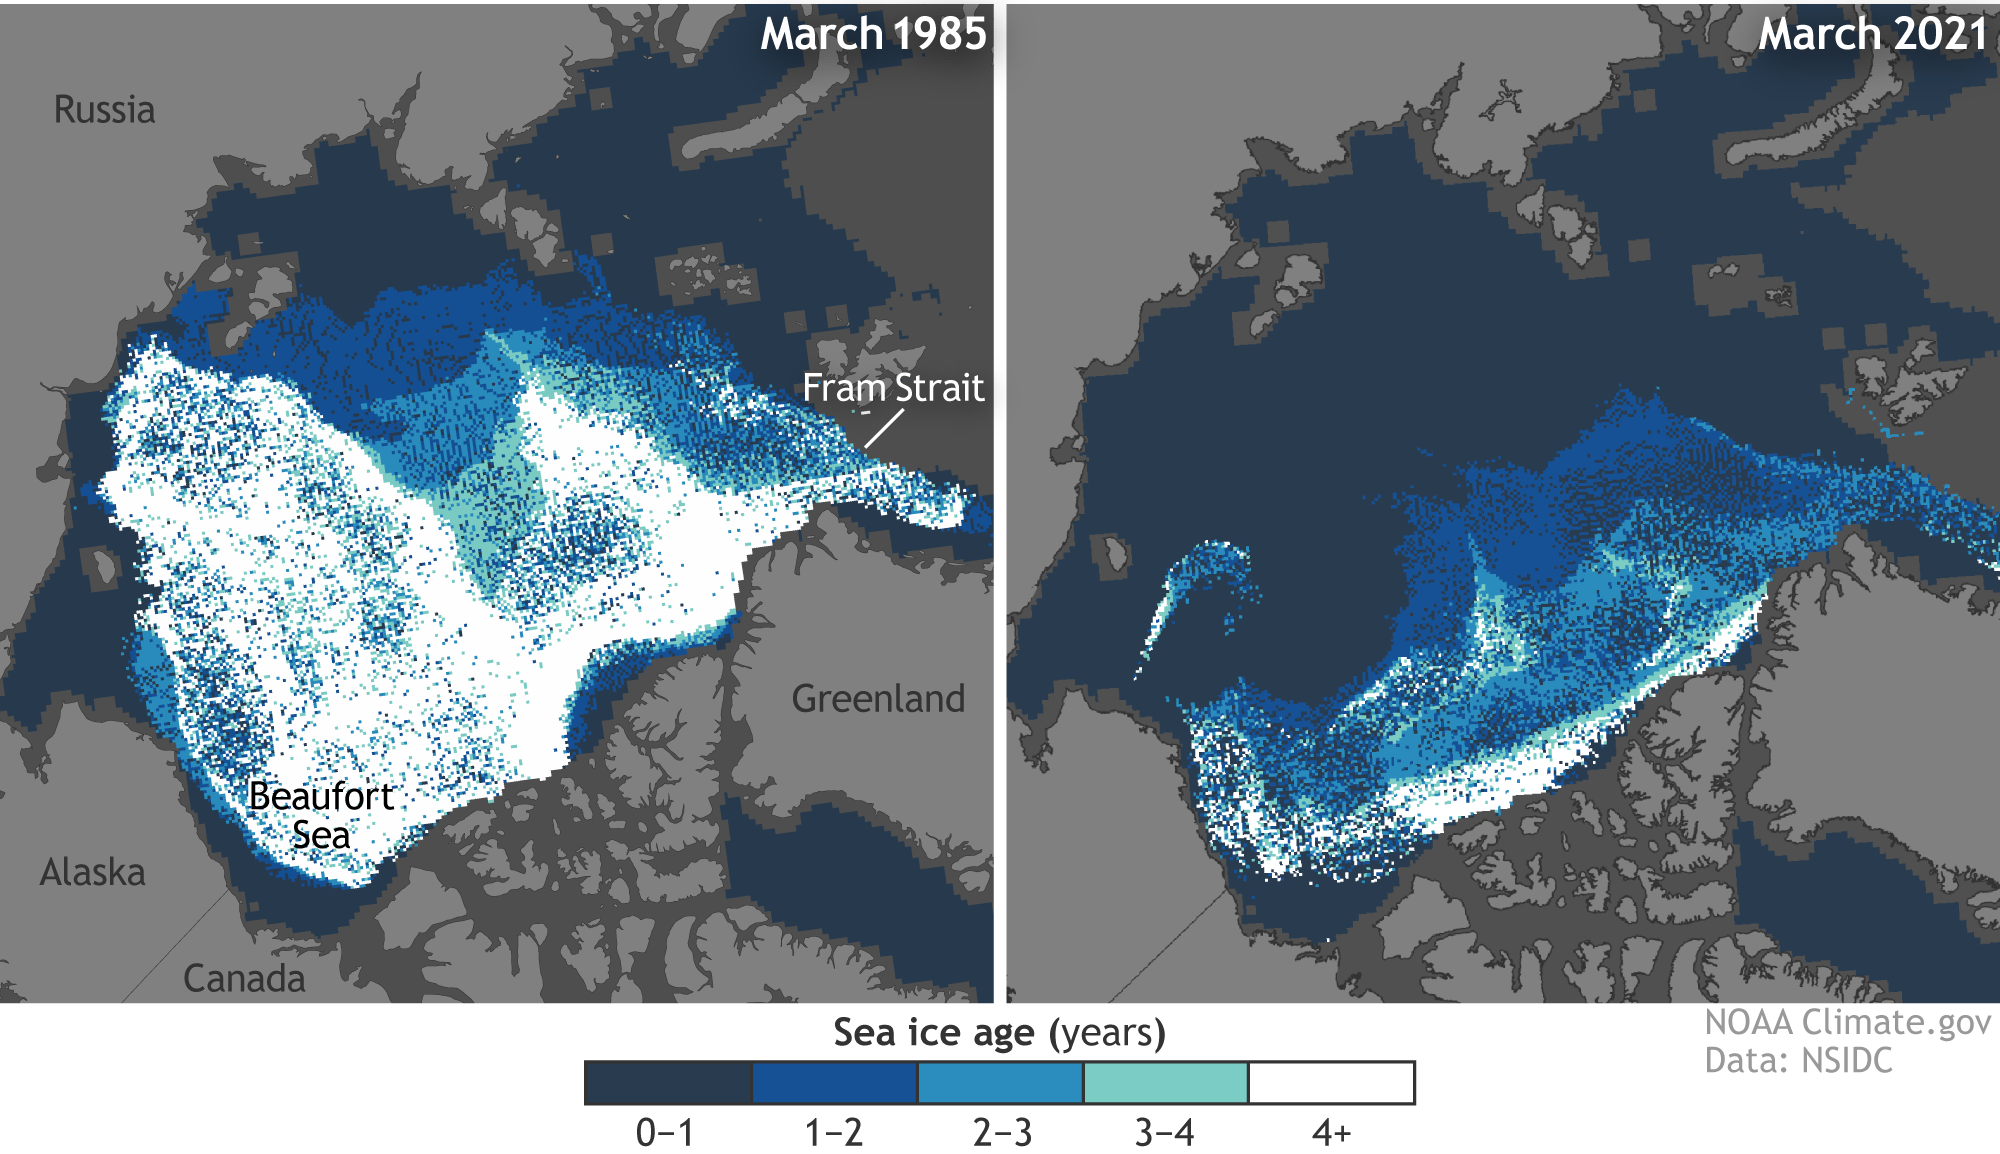 Arctic sea ice extent 1985 vs 2021